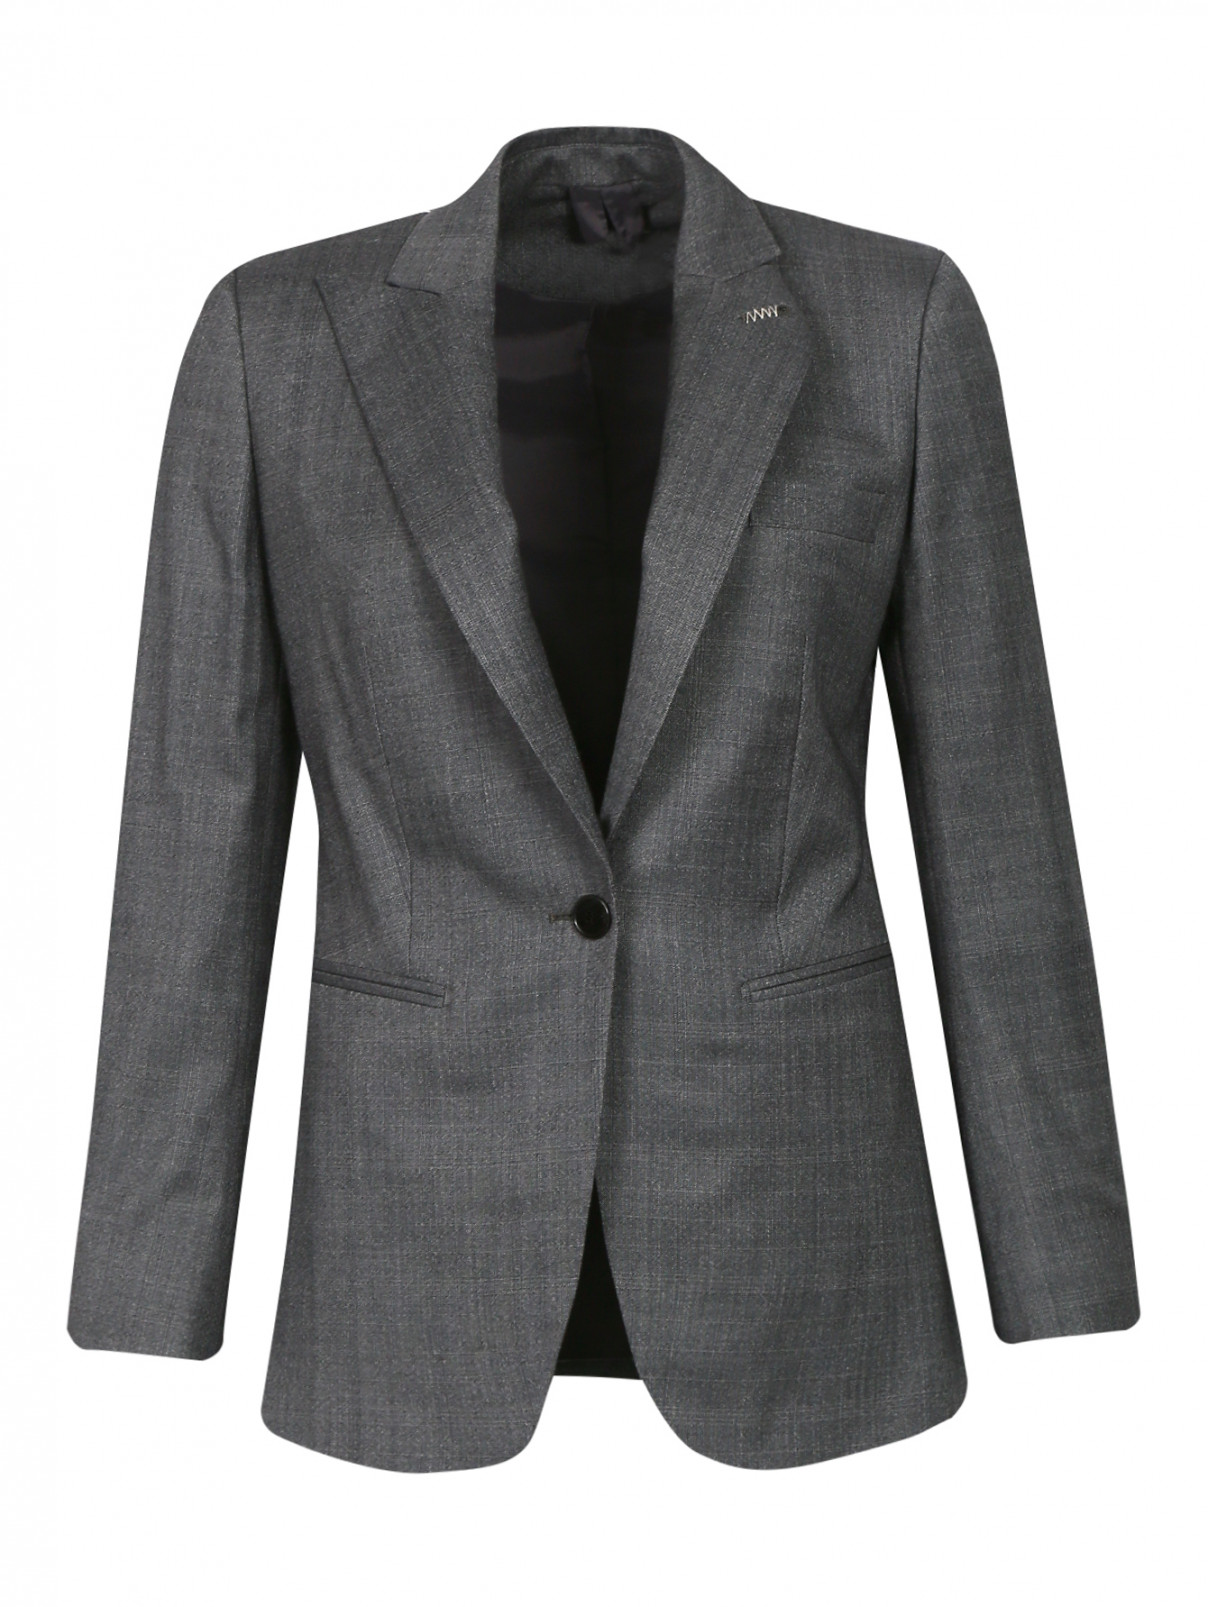 Пиджак из шерсти с узором "клетка" Max Mara  –  Общий вид  – Цвет:  Серый